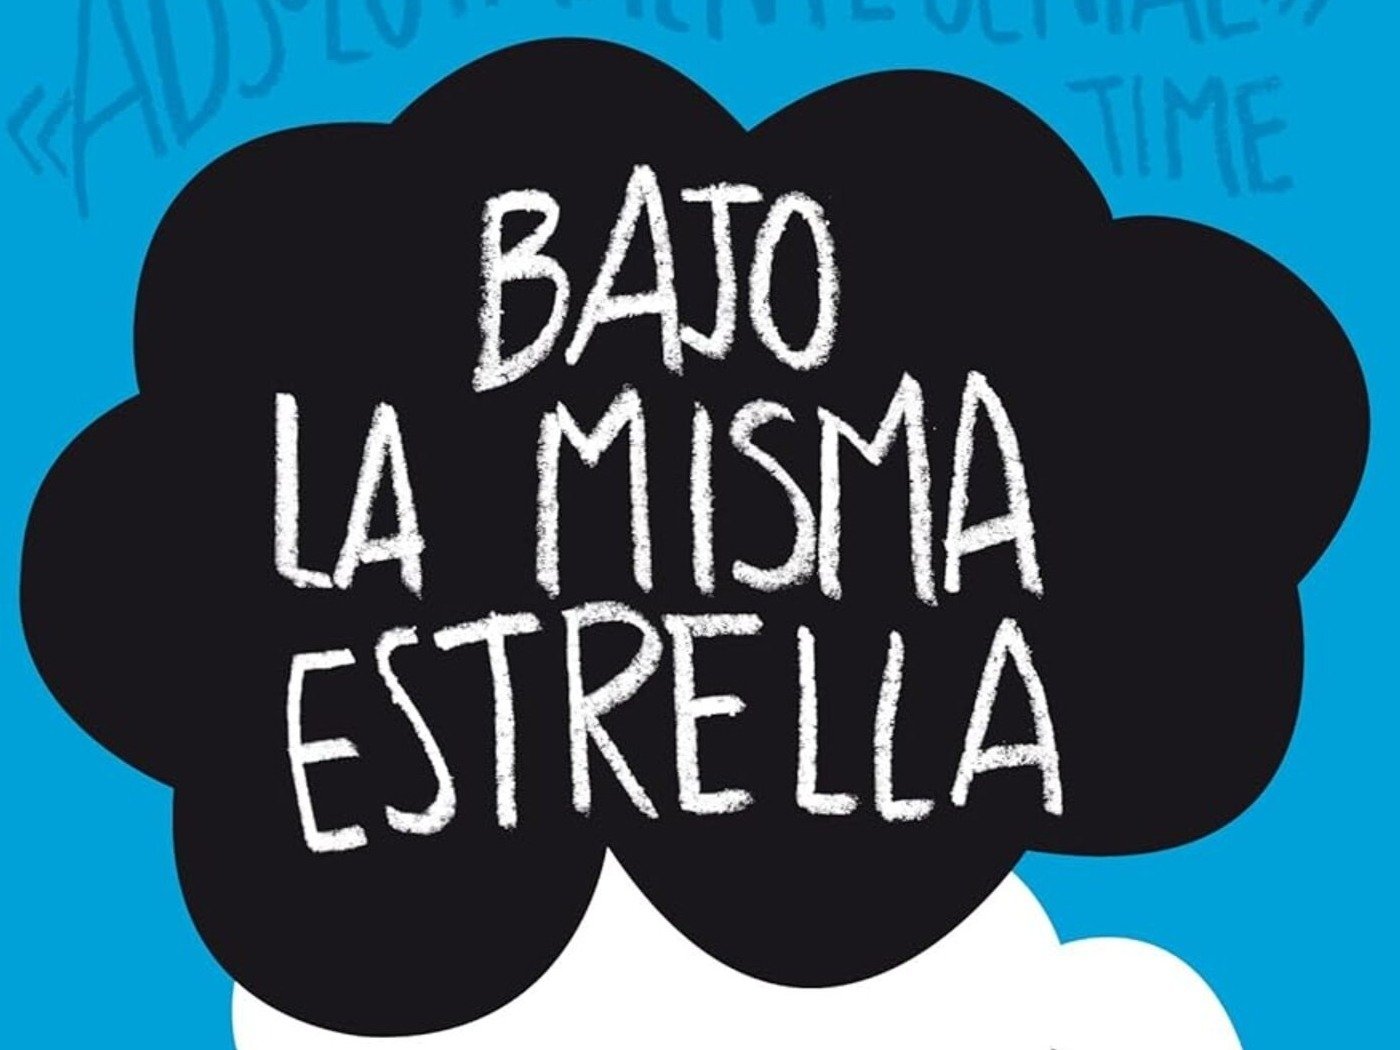 La novela juvenil 'Bajo la misma Estrella' fue el libro más vendido en  España en 2014